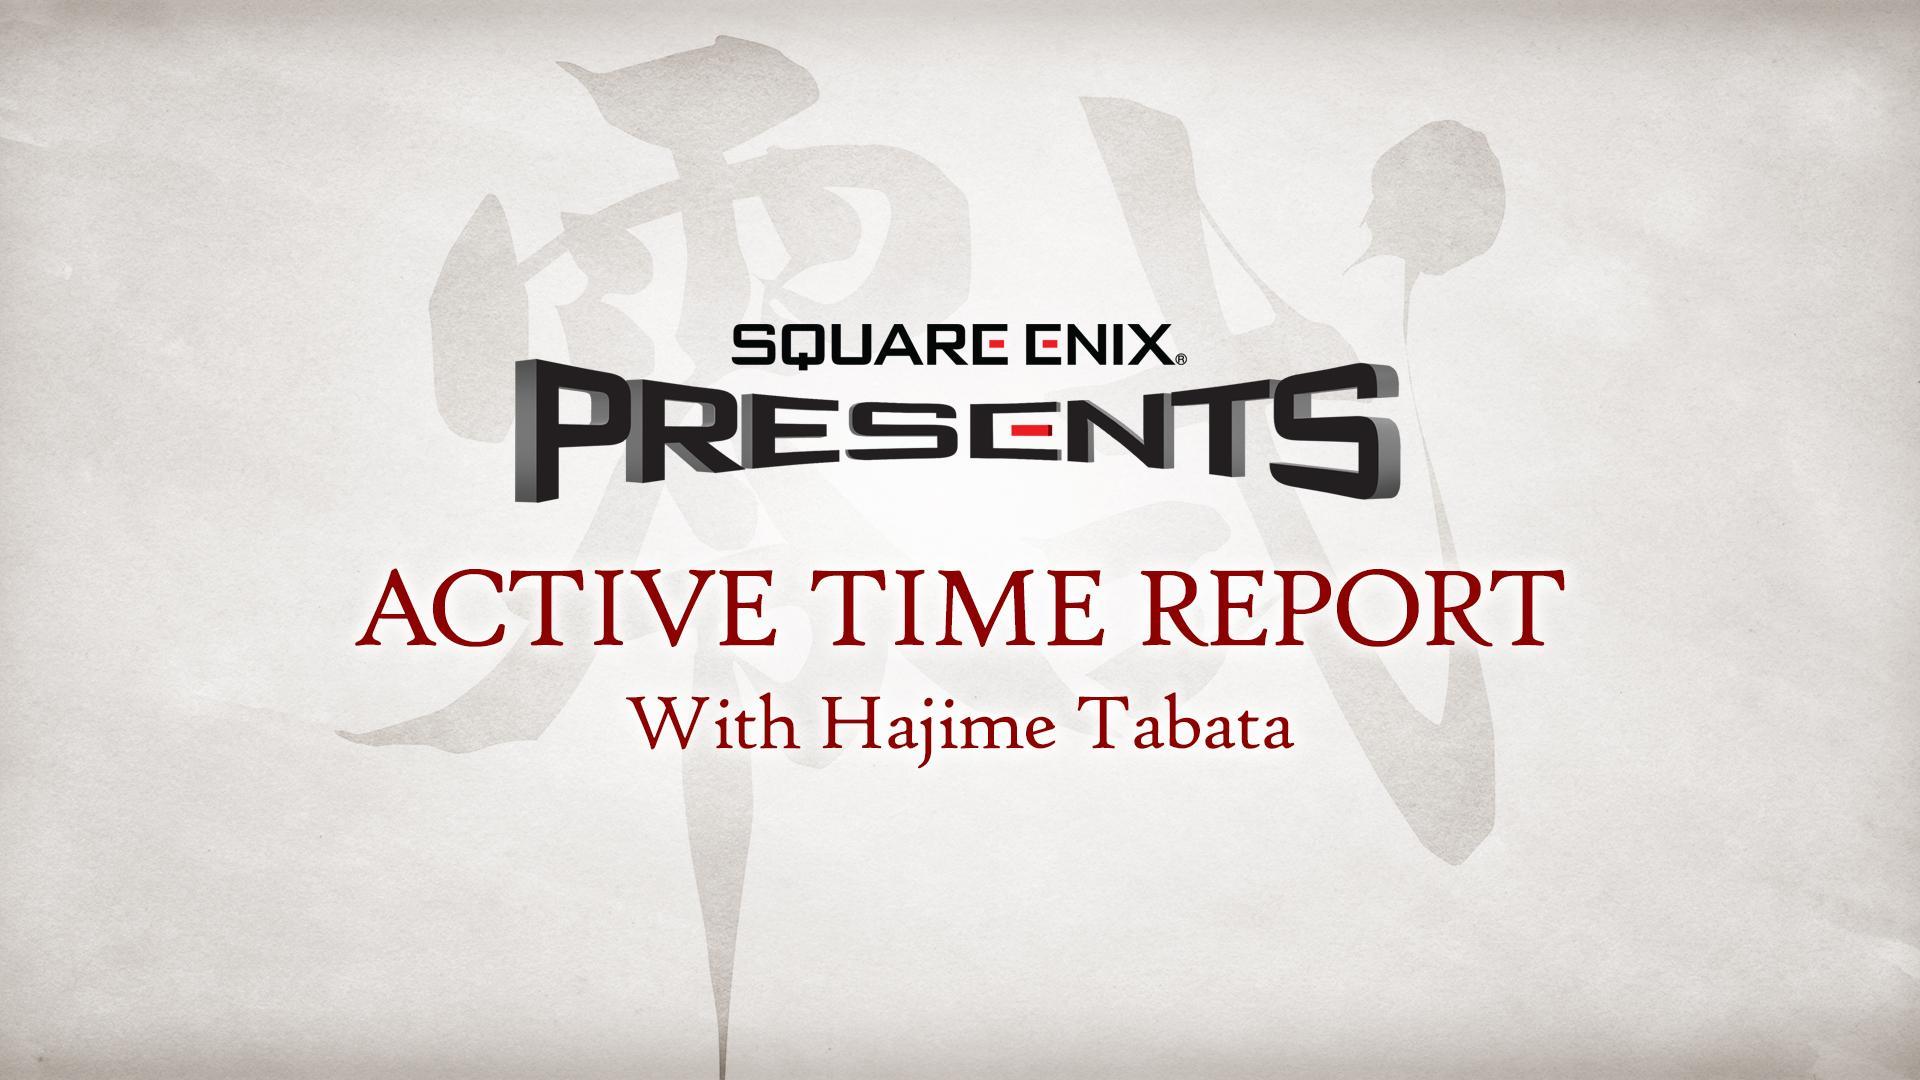 Next action. Square Enix проекты. Hajime логотип. Action time. Hajime новый логотип.